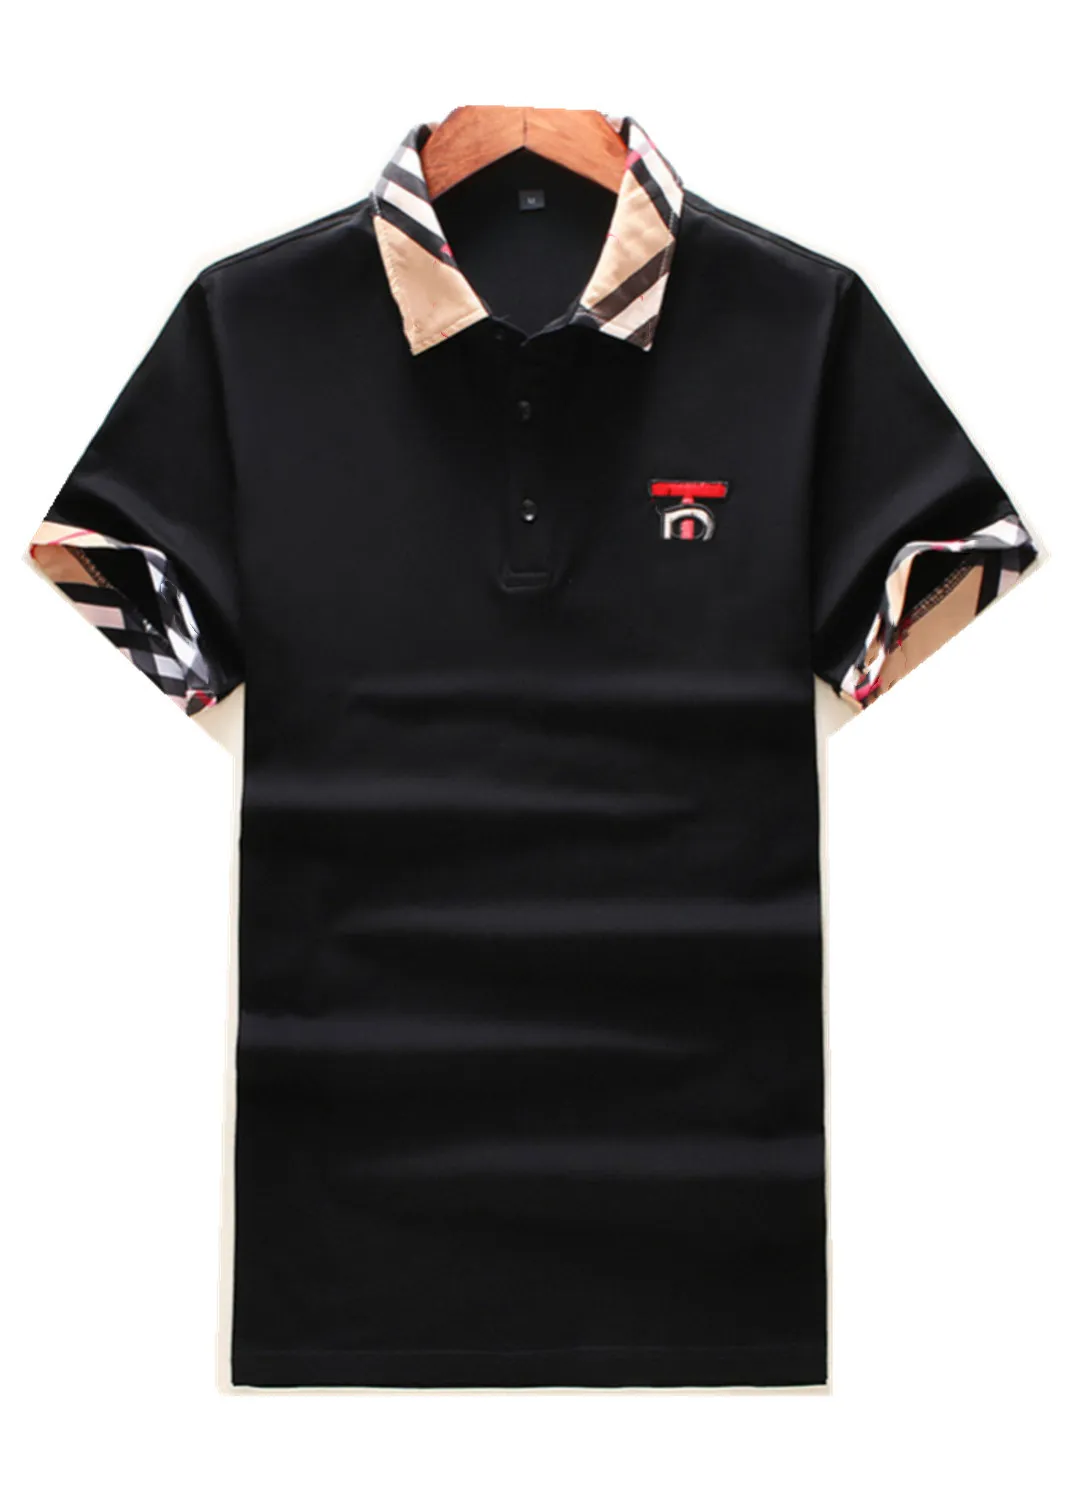 2022Luxury Casual Мужская футболка дышащая дышащая половая одежда дизайнер с коротким рукавом футболка 100% хлопок высокое качество оптом черно-белый размер M-3XL # ZO09